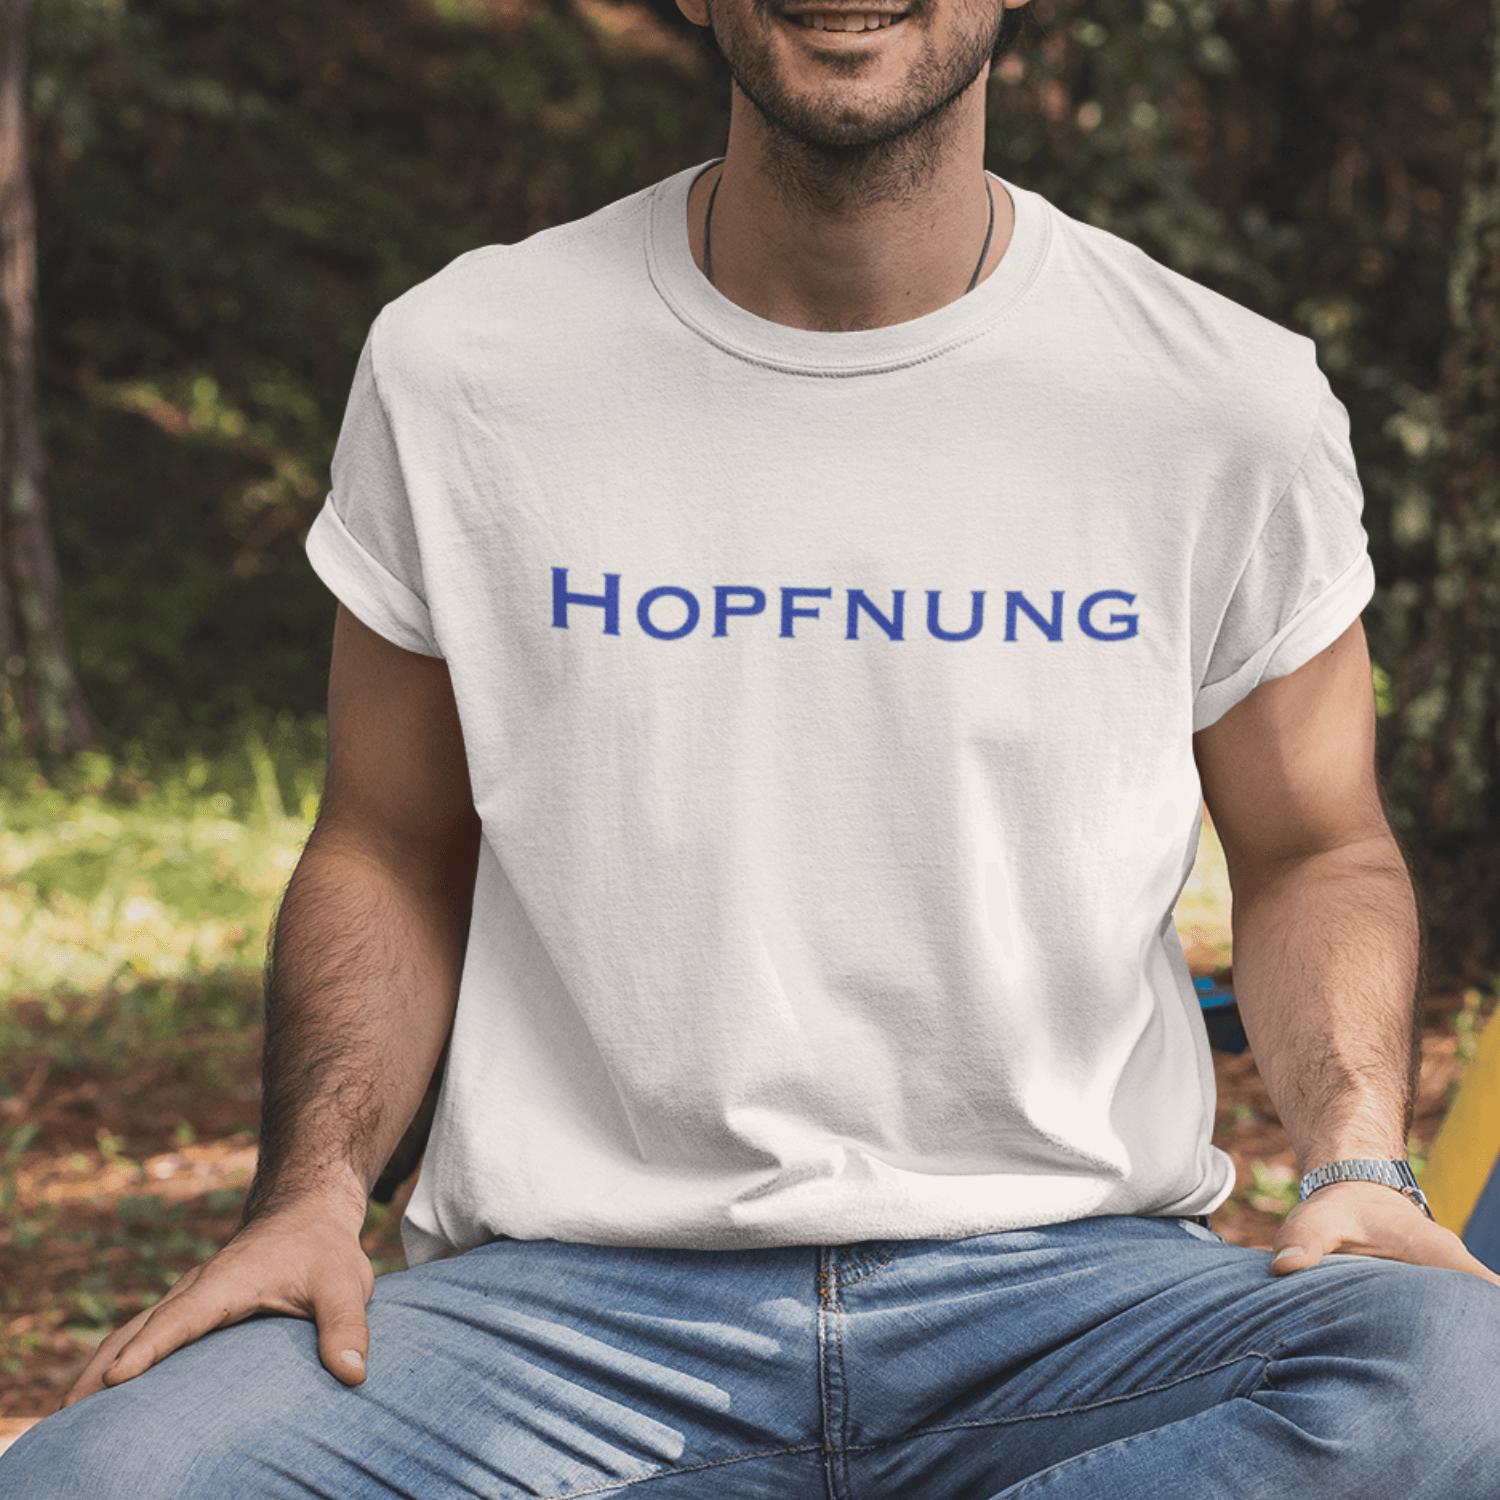 HOPFNUNG - Herren Shirt - einschenken24.de